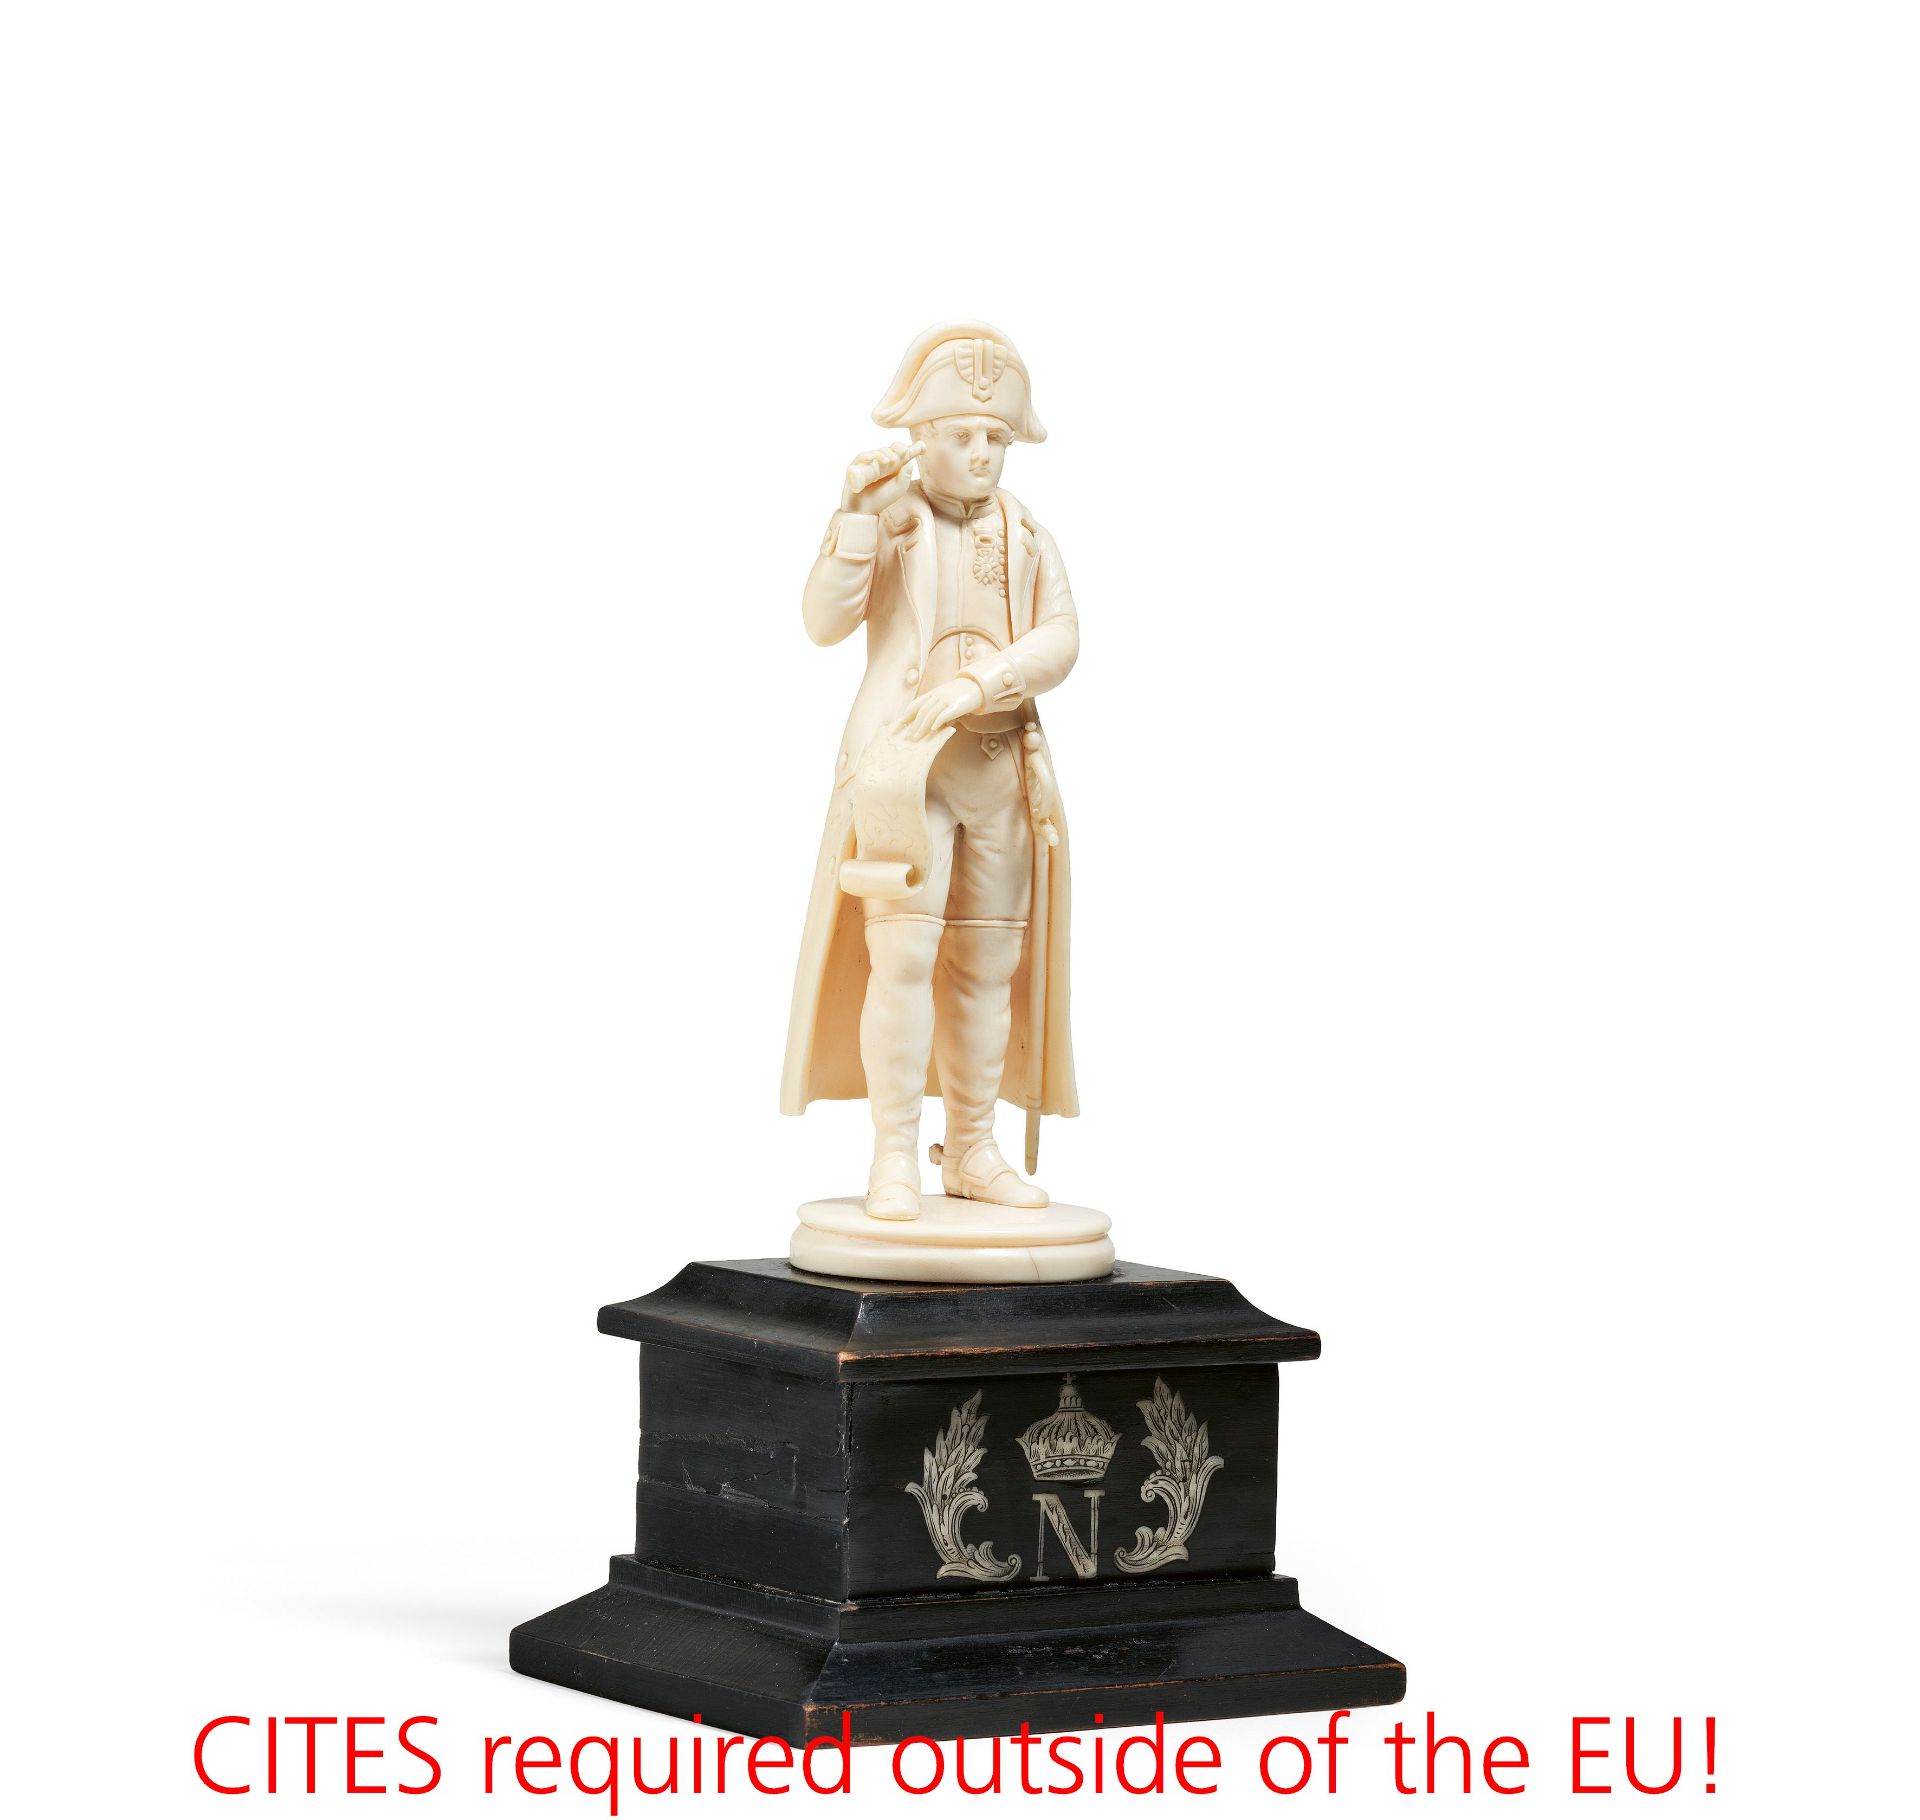 Ivory figurine of Napoleon Bonaparte